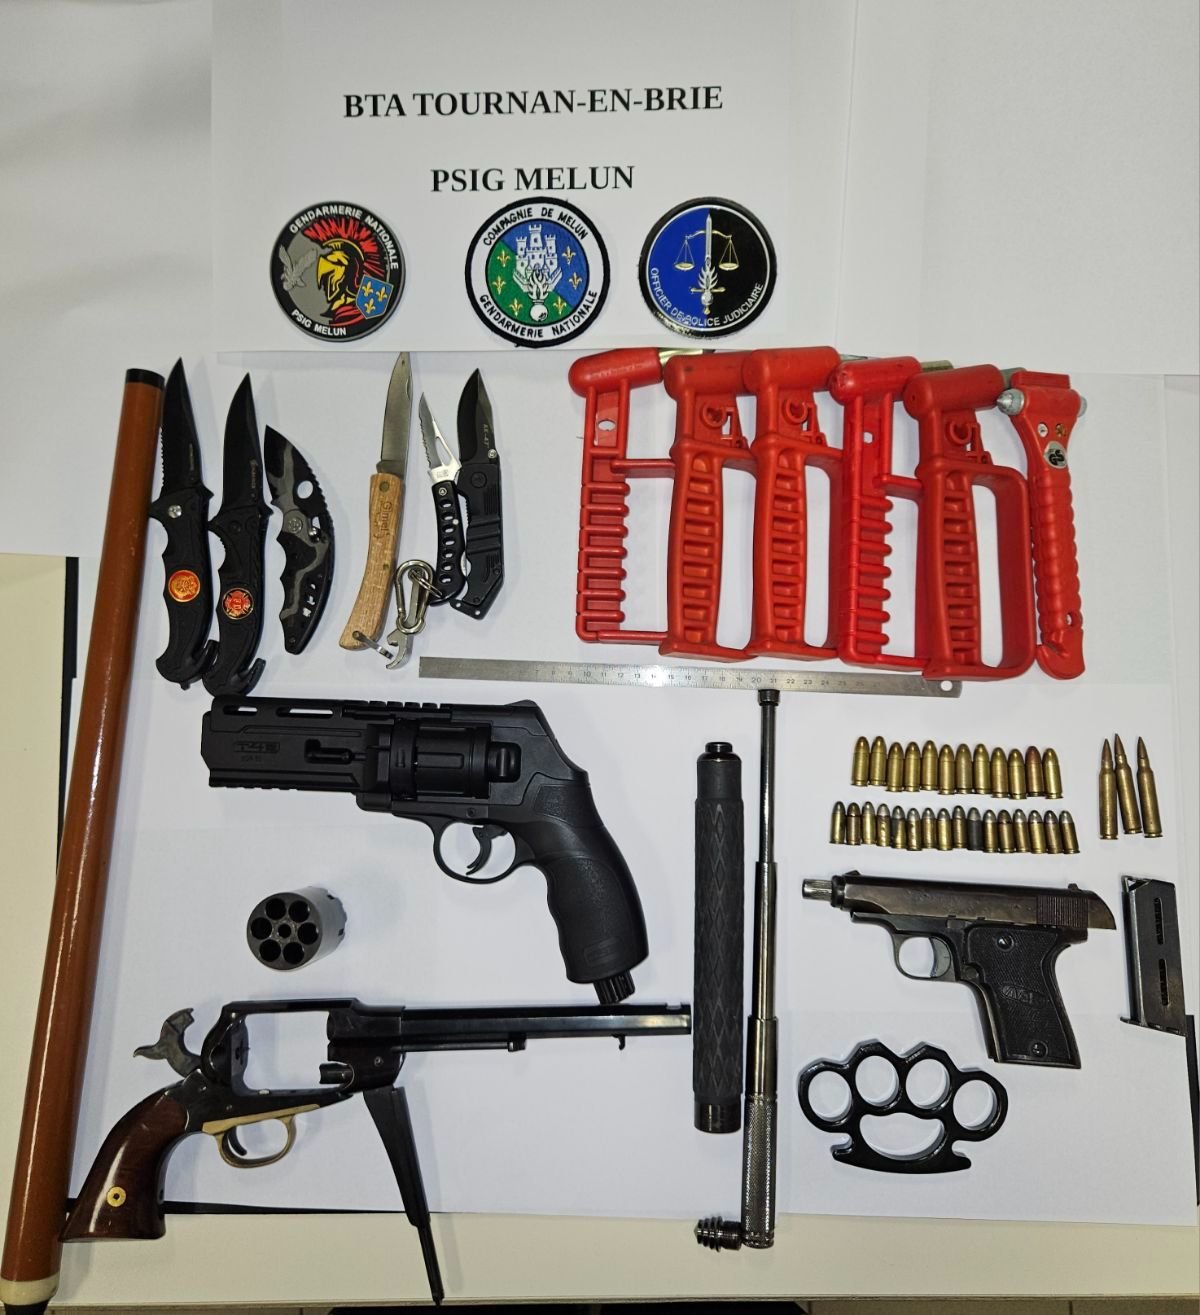 Les gendarmes de Tournan-en-Brie, aidés du PSIG de Melun, ont saisi des armes de poing, des couteaux, ou encore des munitions chez un habitant de Pontault-Combault. Gendarmerie nationale